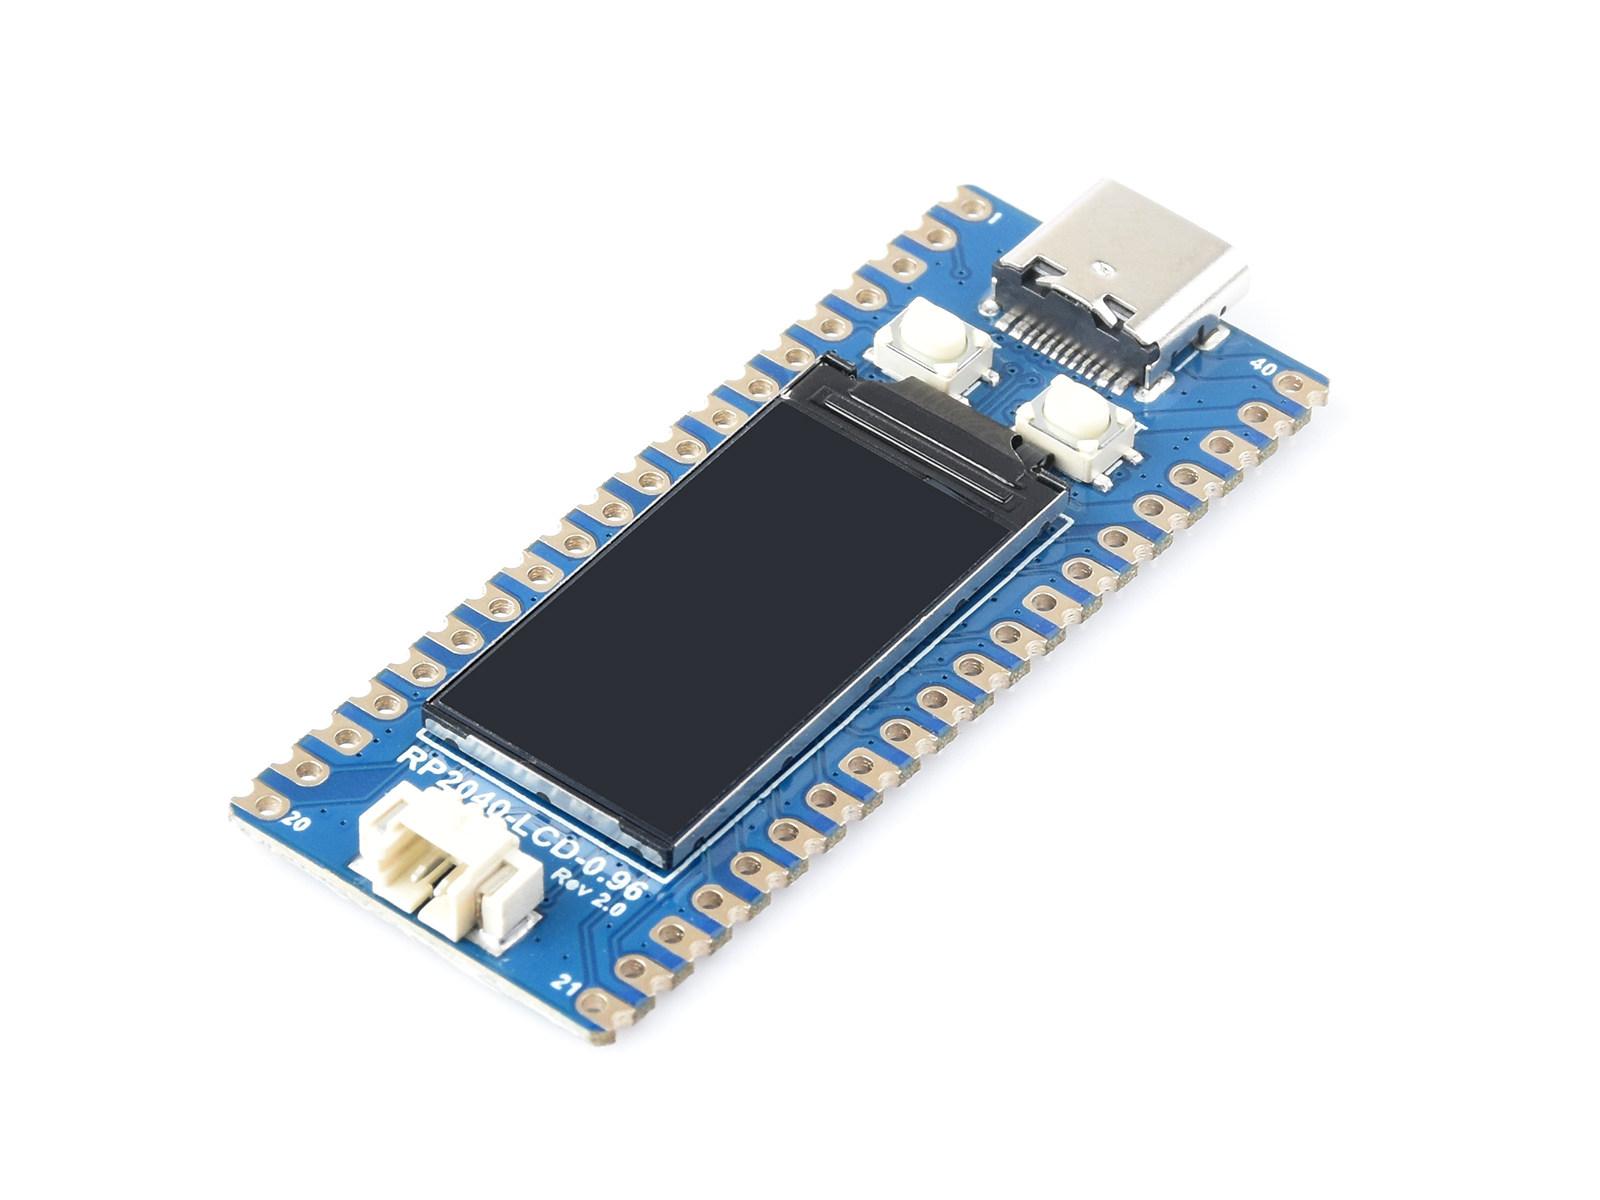 微雪RP2040微控制器开发板 基于树莓派官方RP2040双核处理器